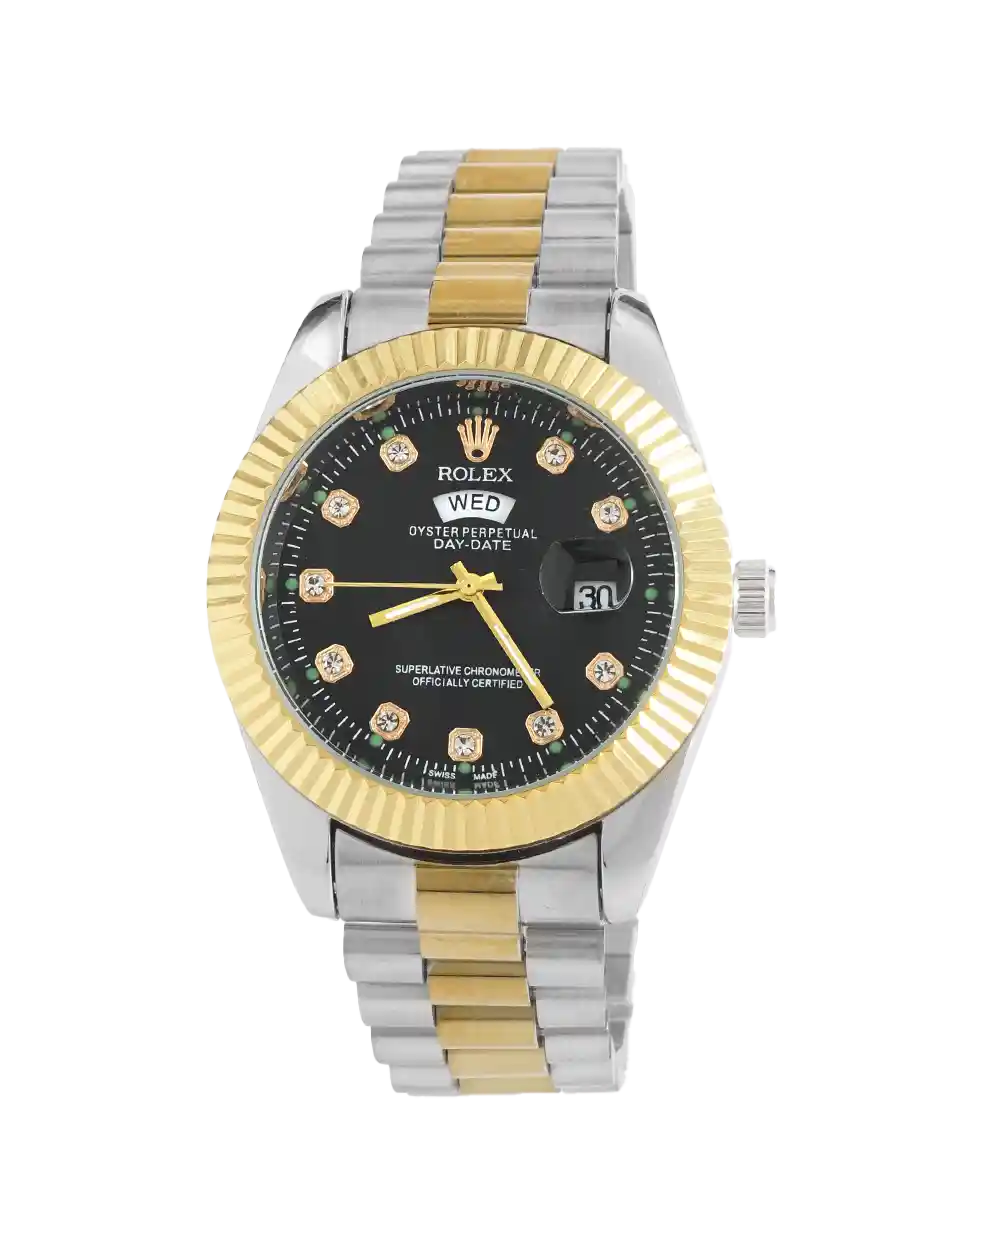 خرید ساعت مچی مردانه رولکس ROLEX طرح DAY DATE مدل 2084 رنگ نقره ای طلایی و صفحه مشکی رنگ ثابت و تقویم ایام هفته بهترین قیمت و ارسال رایگان